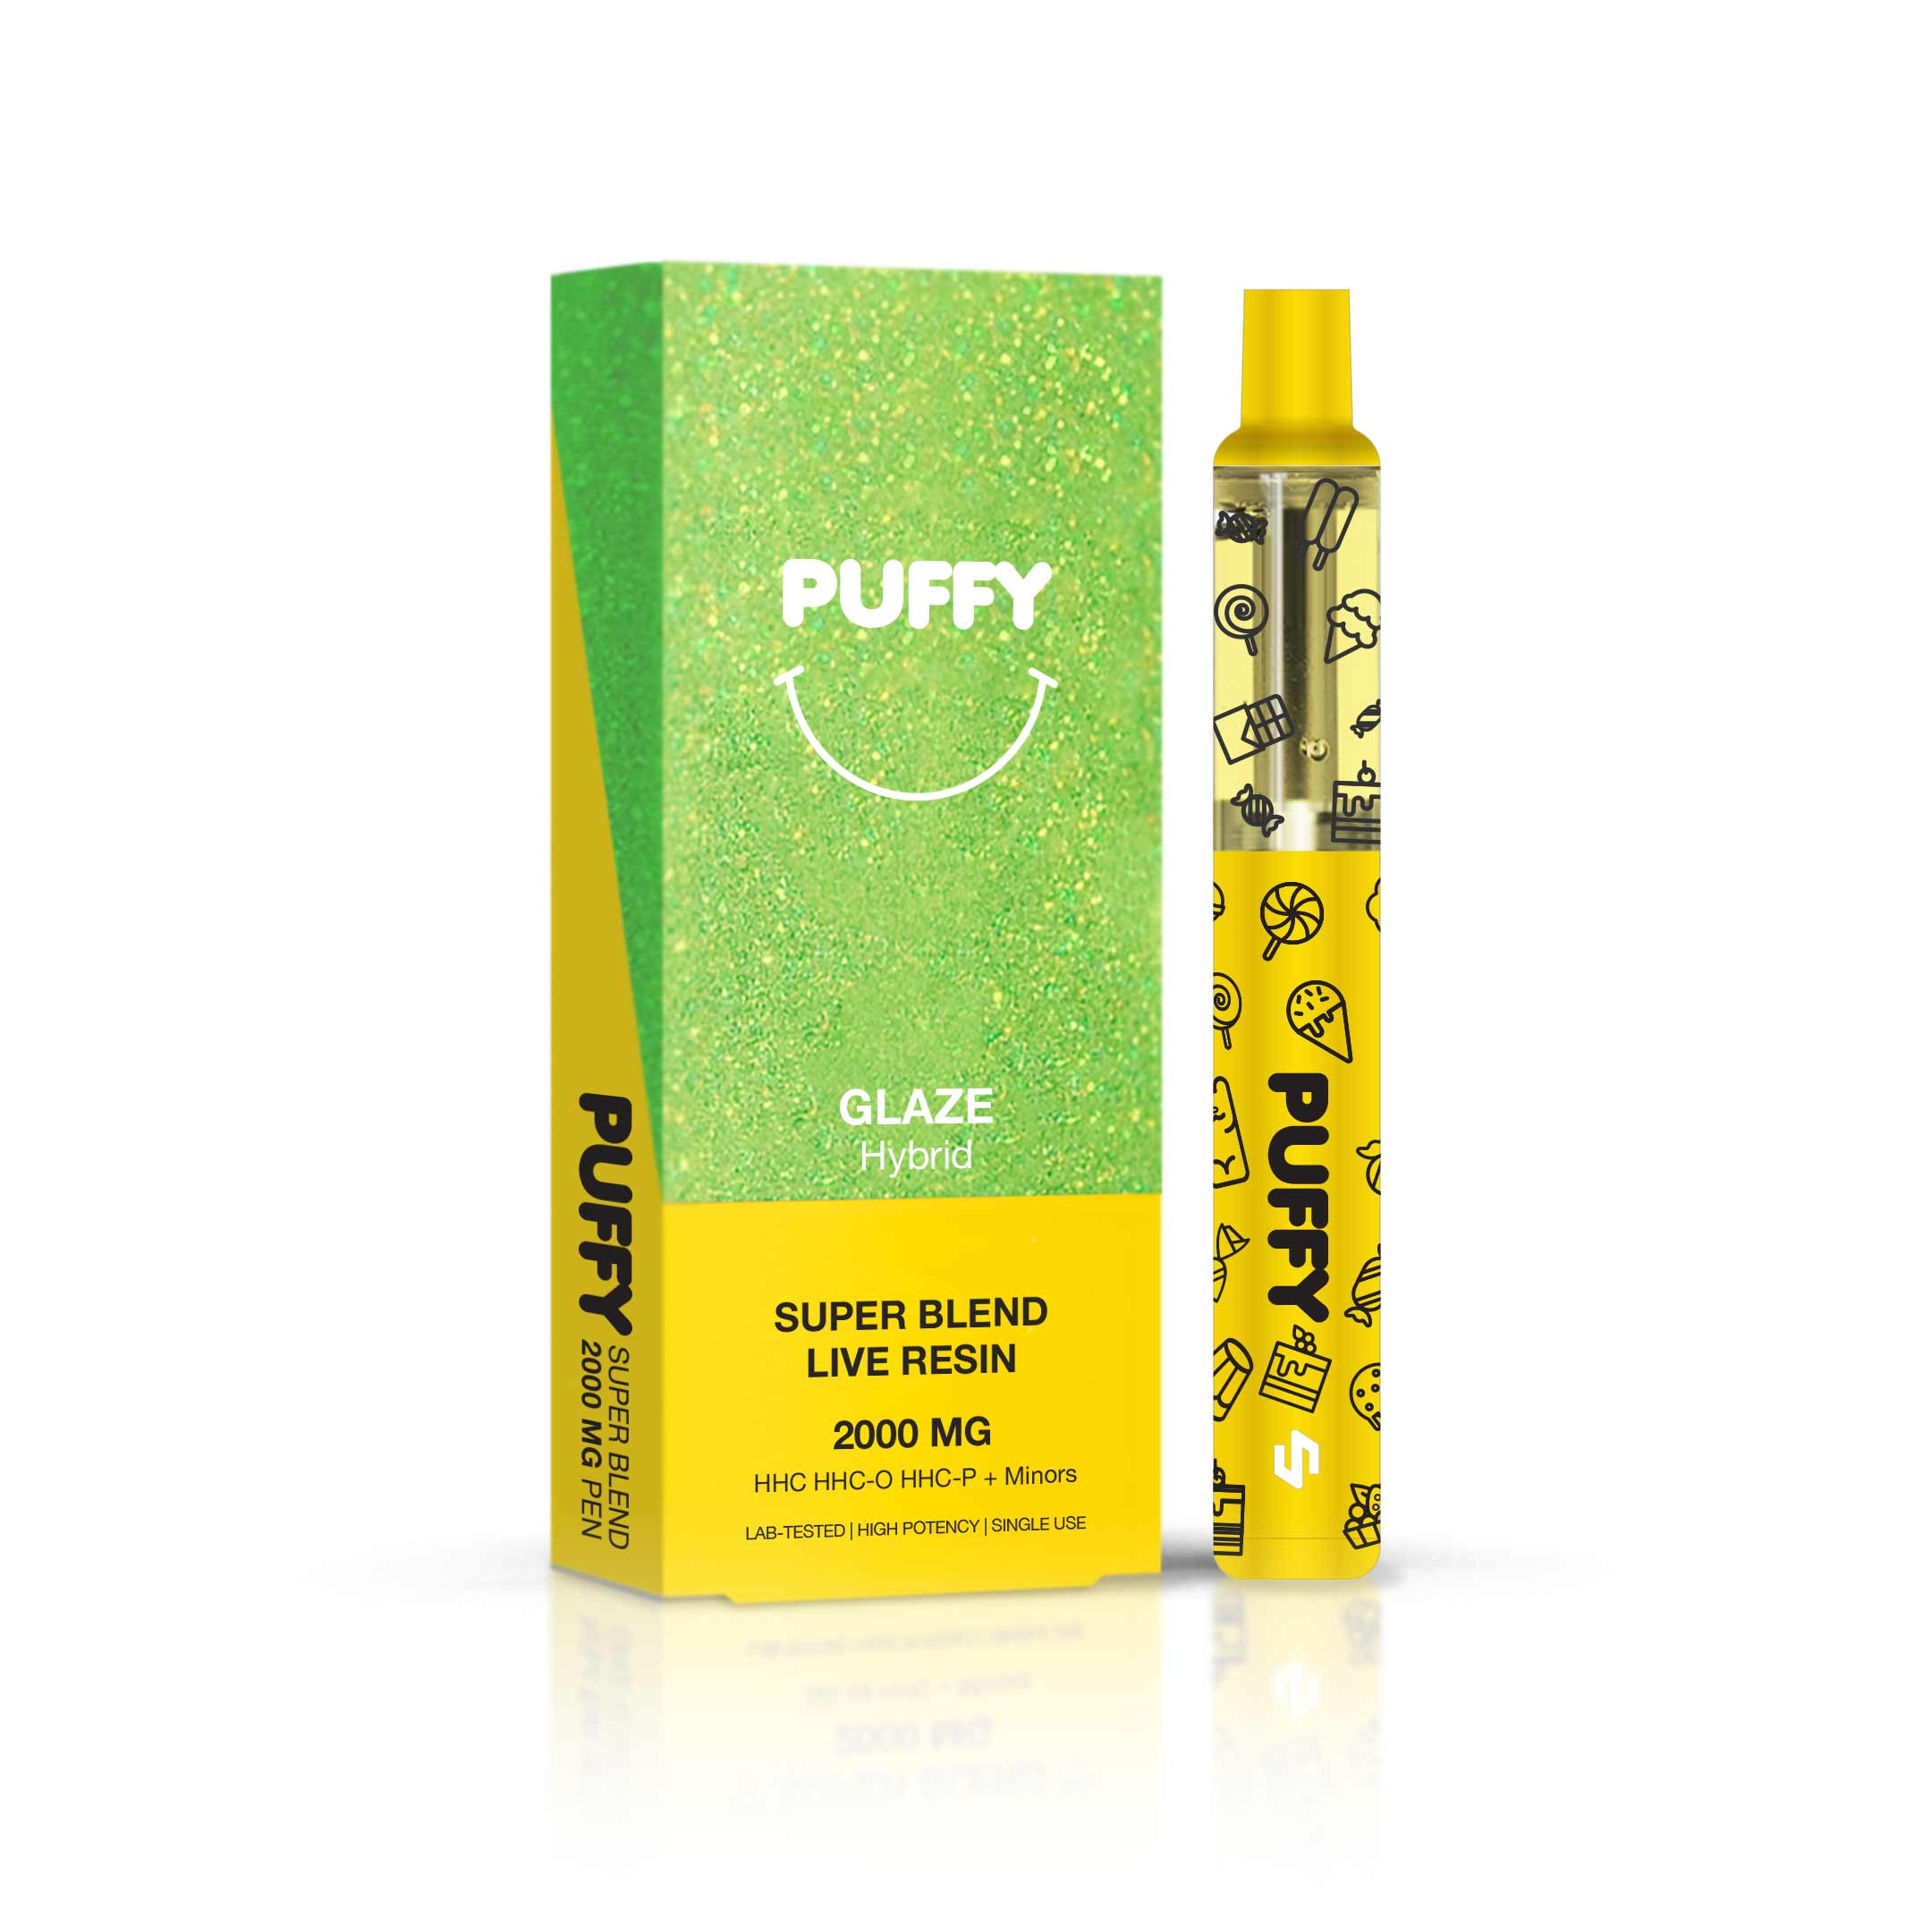 PUFFY 2G - Disposable Puff - Glaze (Super Blends HHC) - HHC/2000MG - 1200 puffs 